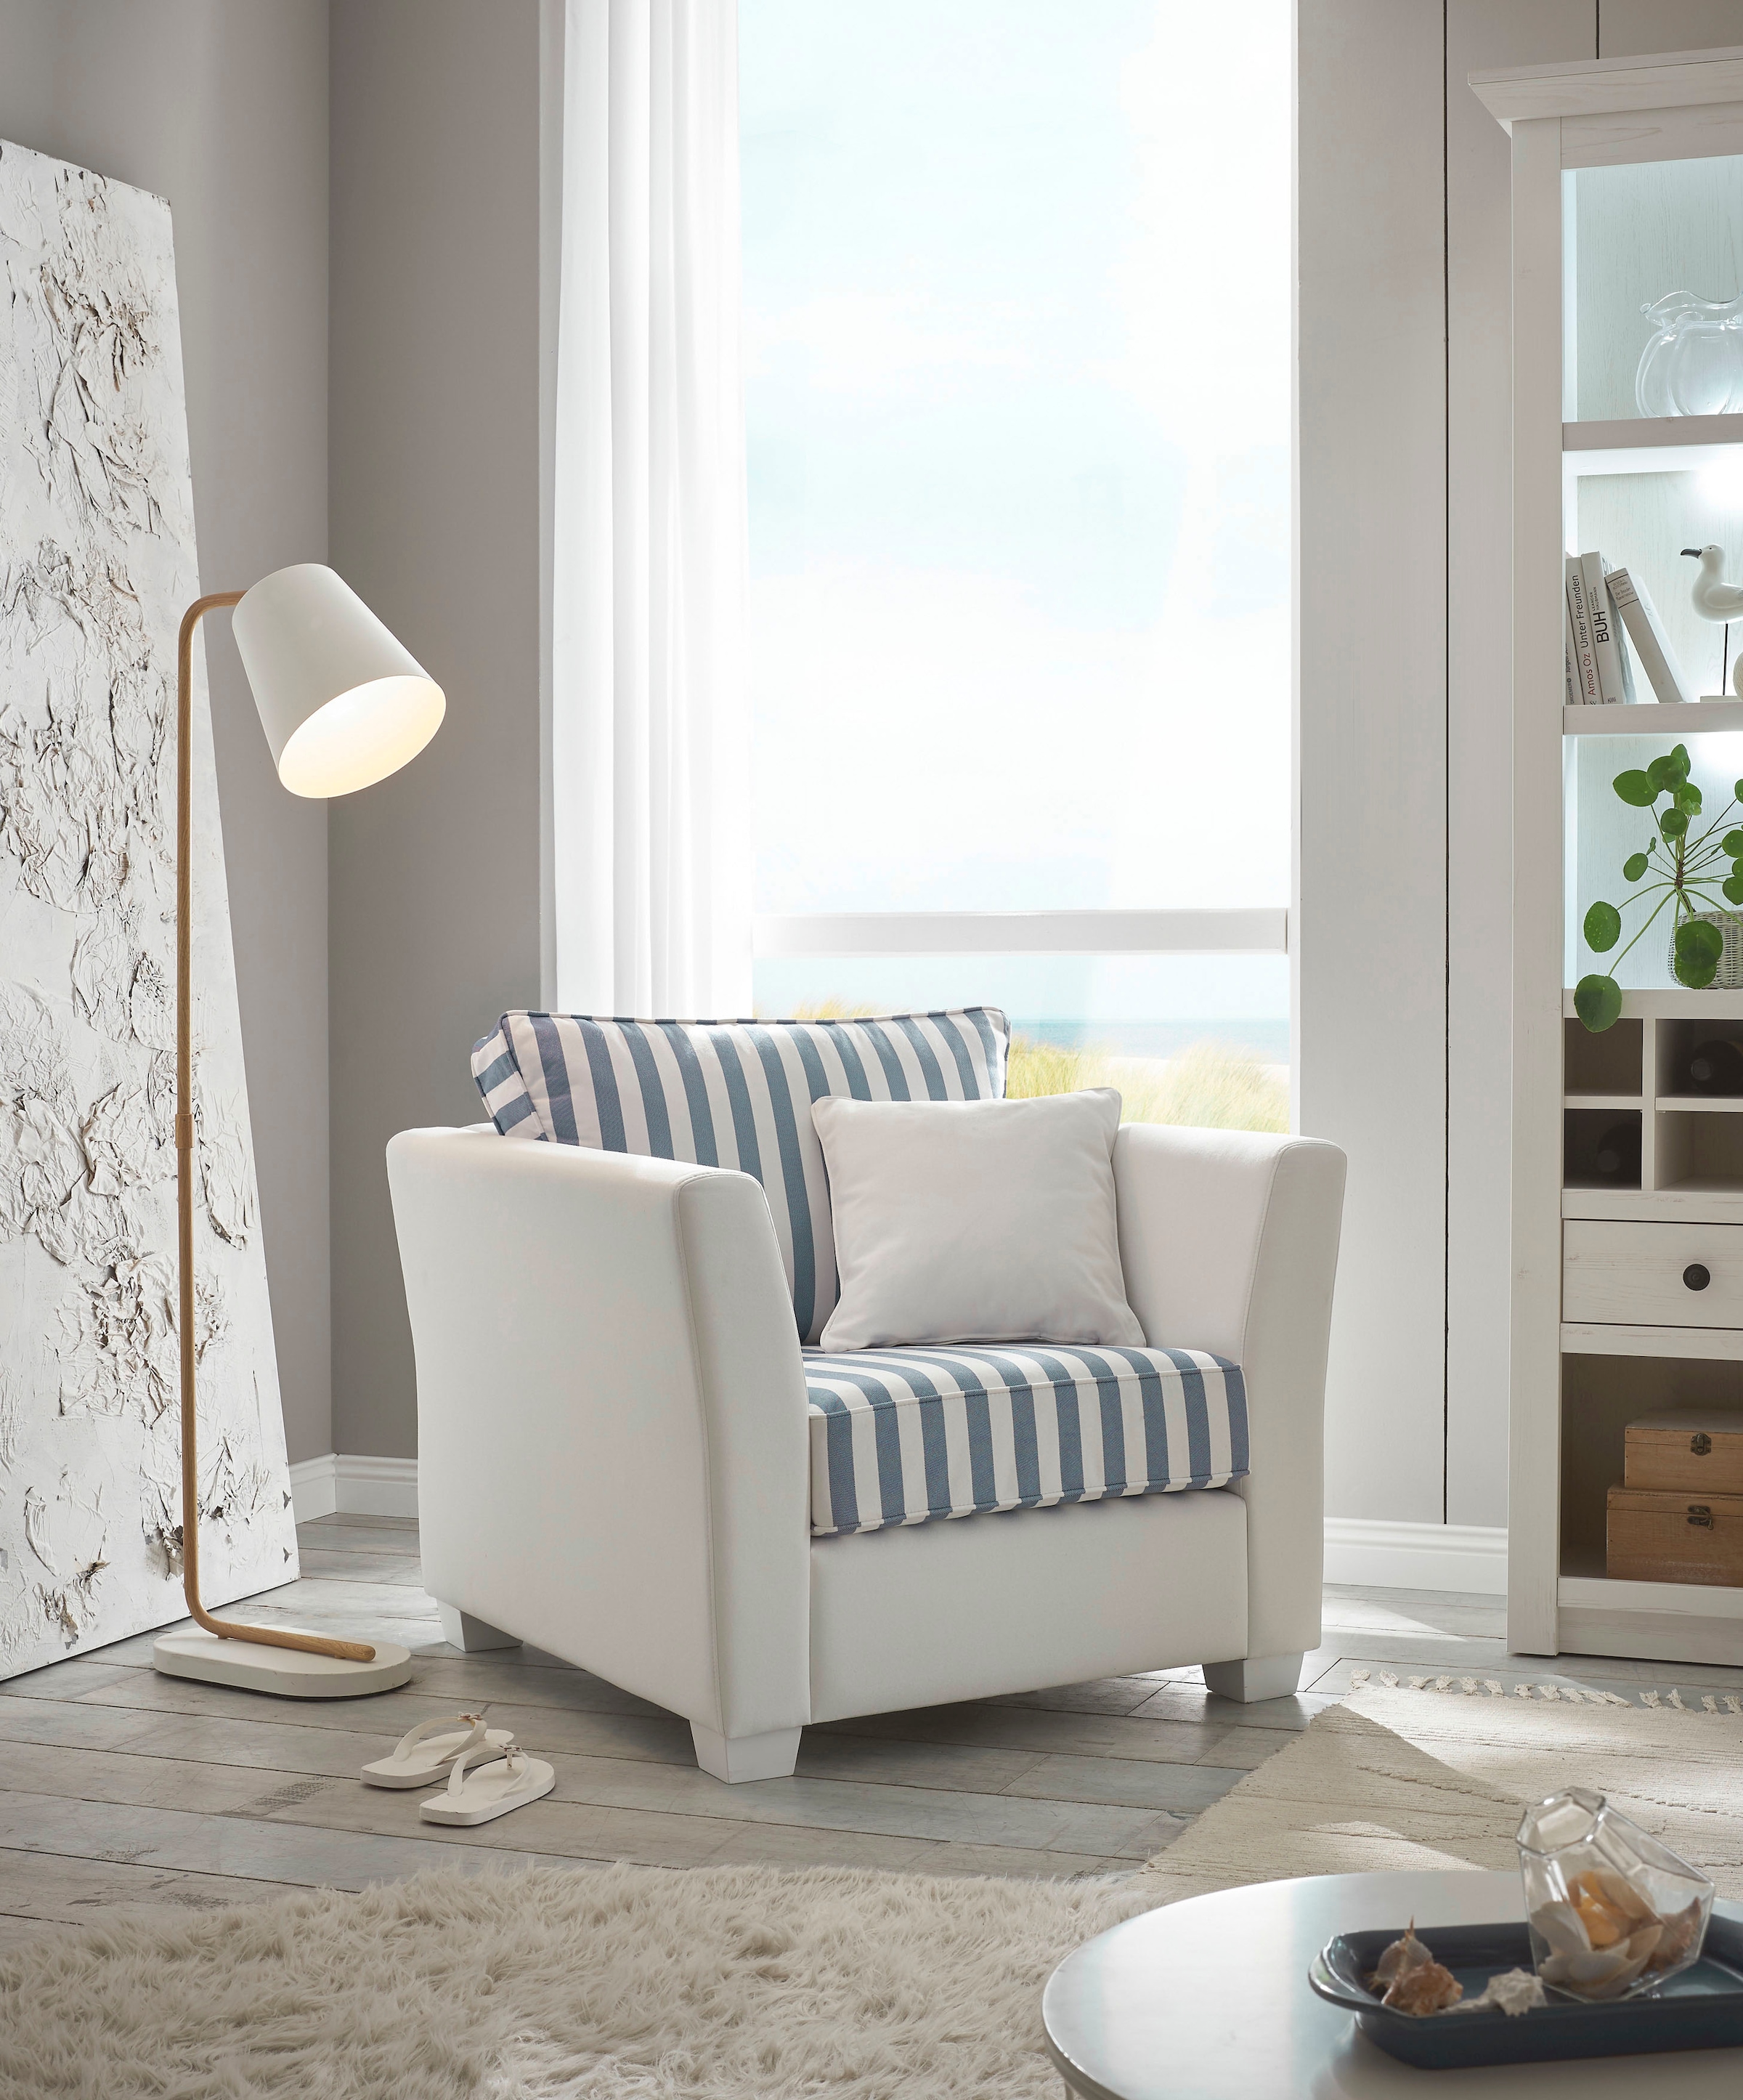 Home affaire Sessel »CALIFORNIA«, maritimer Landhausstil, Sessel mit  Holzfüßen Weiß lackiert kaufen bei OTTO